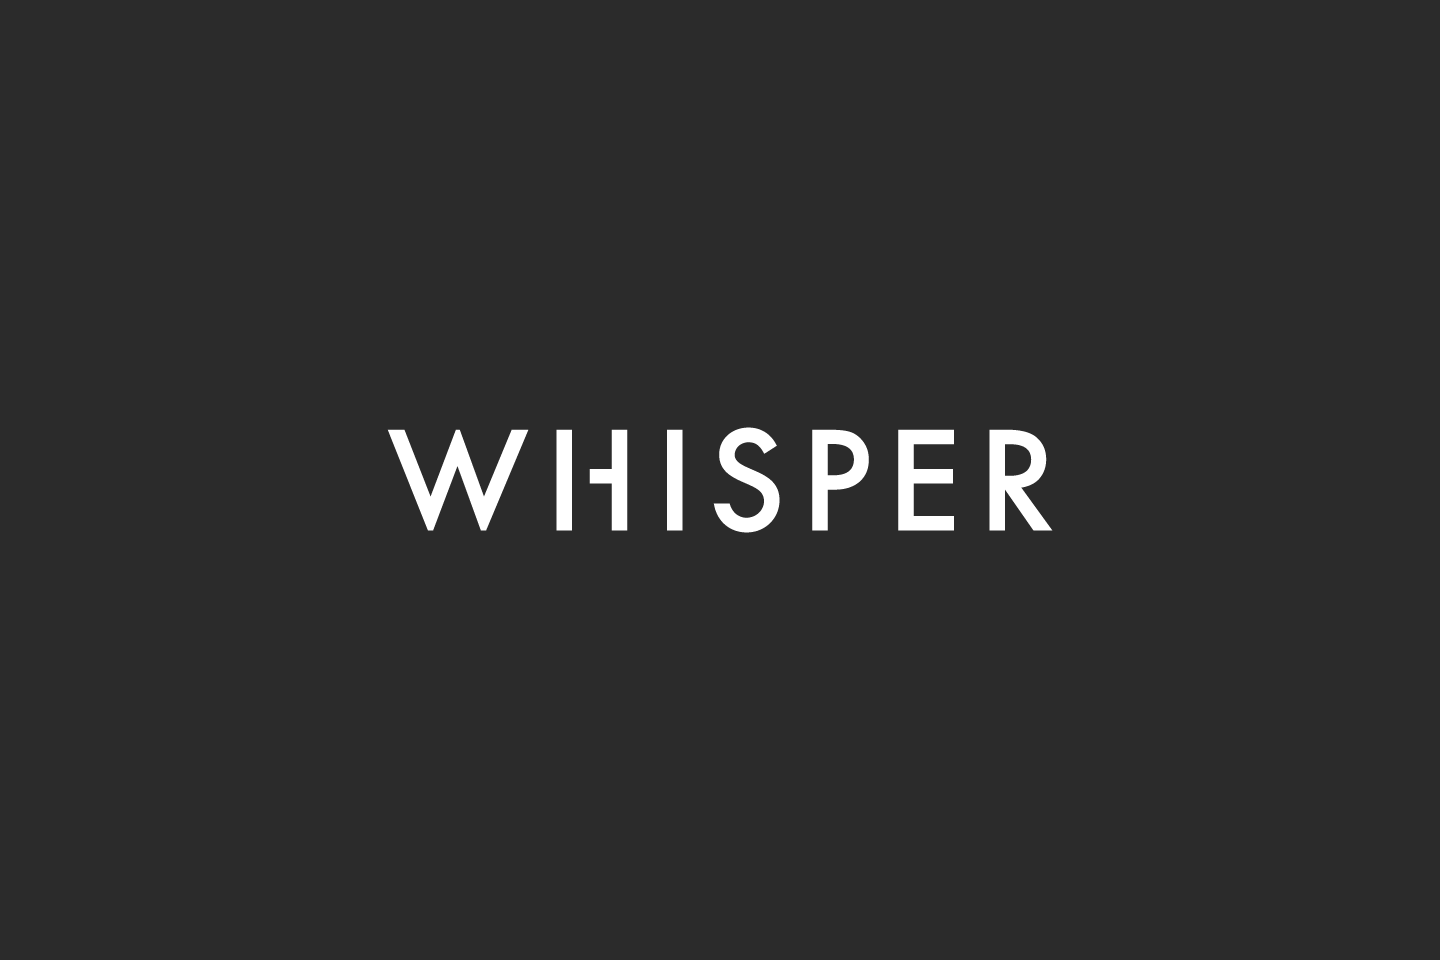 Whisper_wordmark